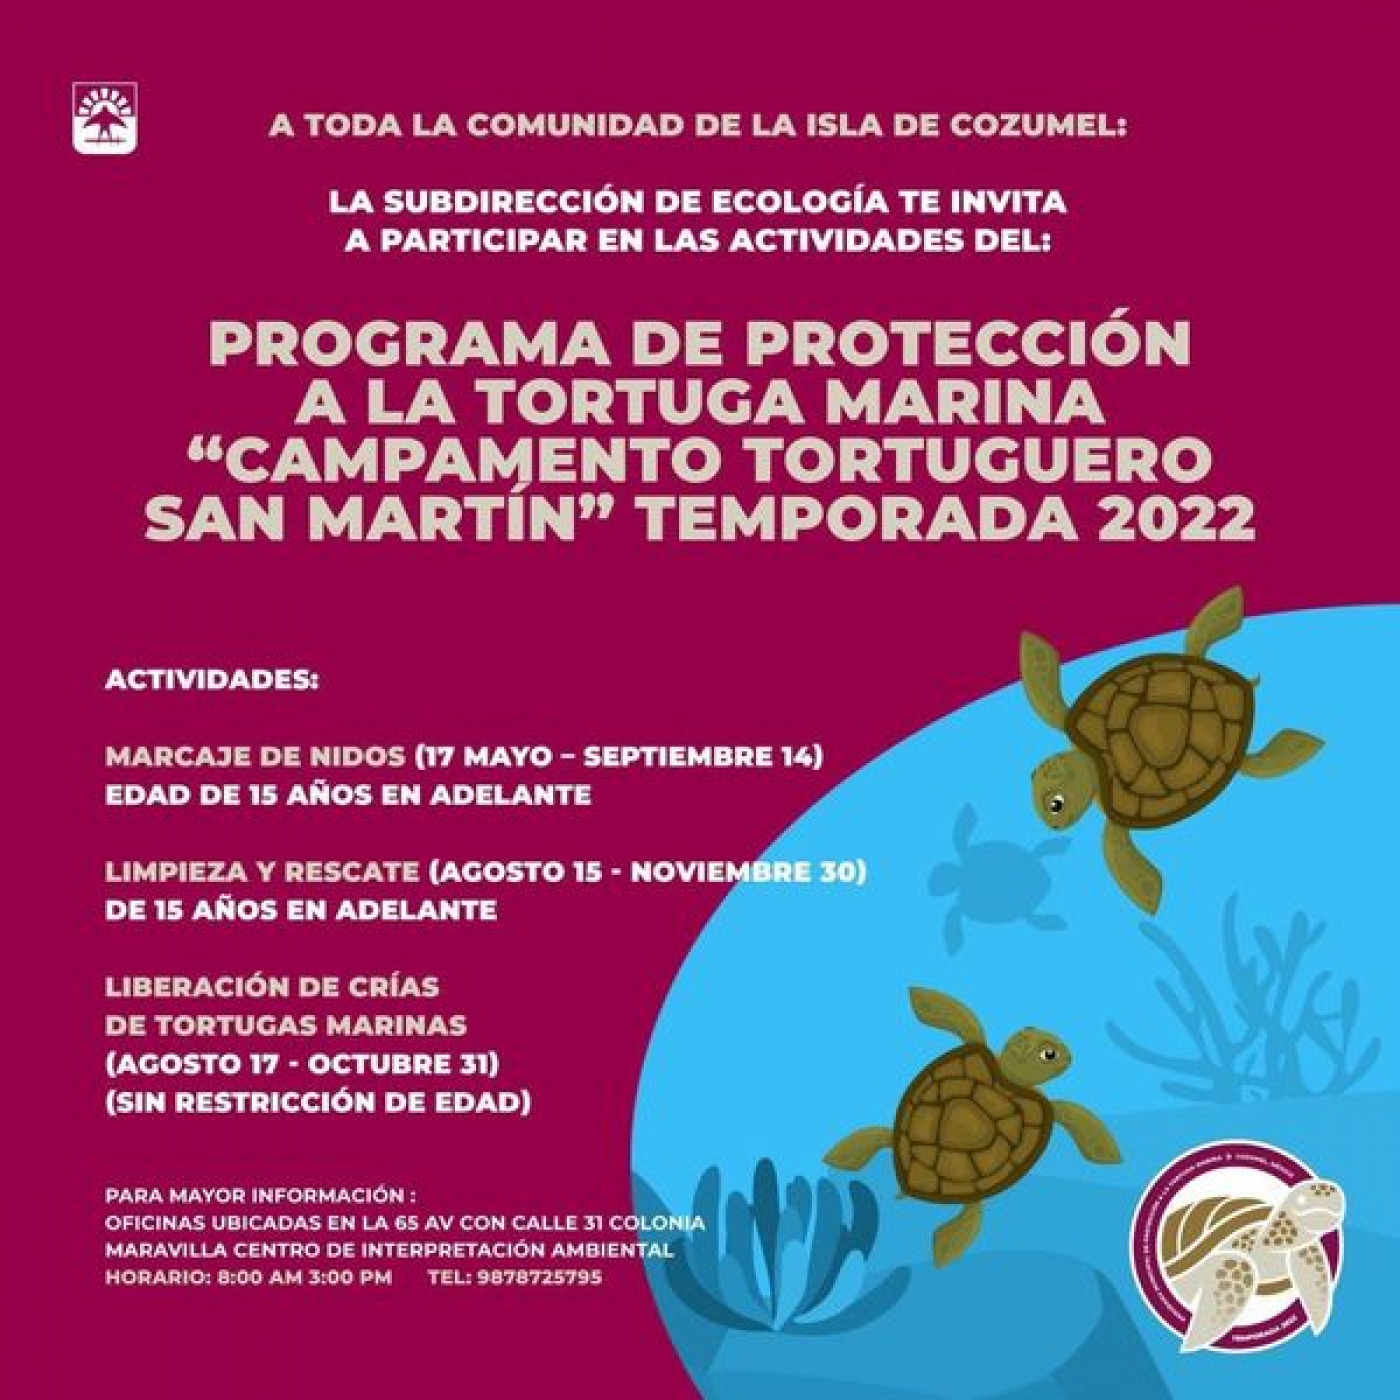 Cozumeleños podrán participar en las actividades de protección a la tortuga marina